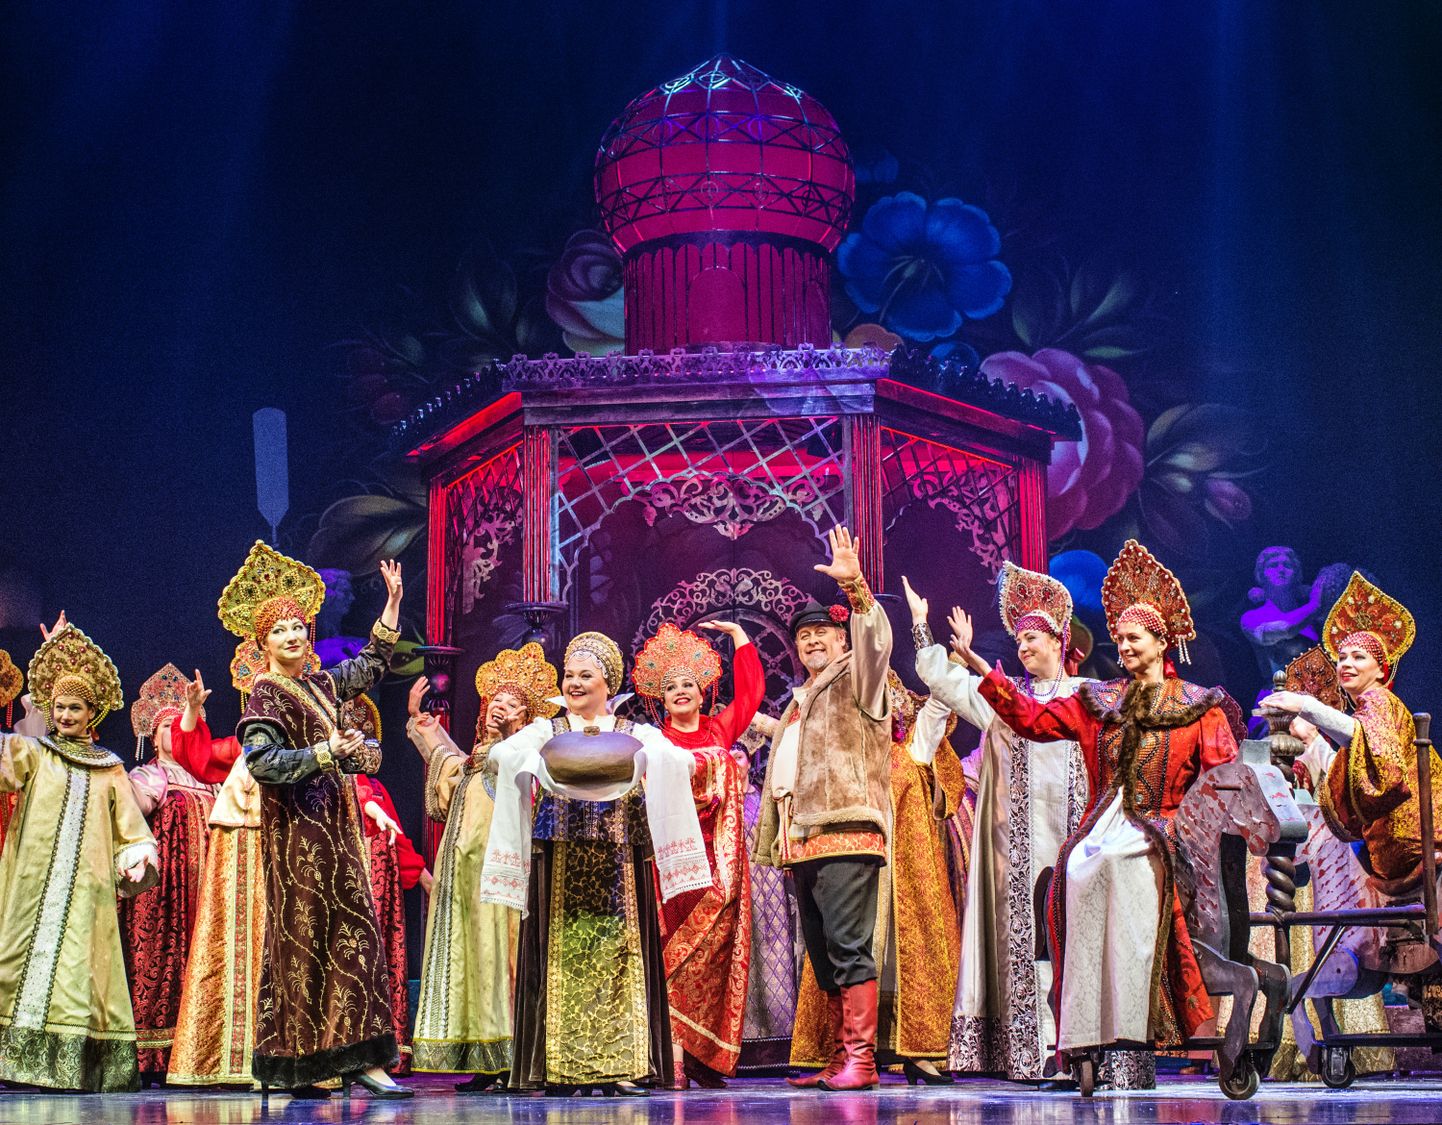 Rahvusooperis esietendub Rimski-Korsakovi ooper «Tsaari mõrsja».